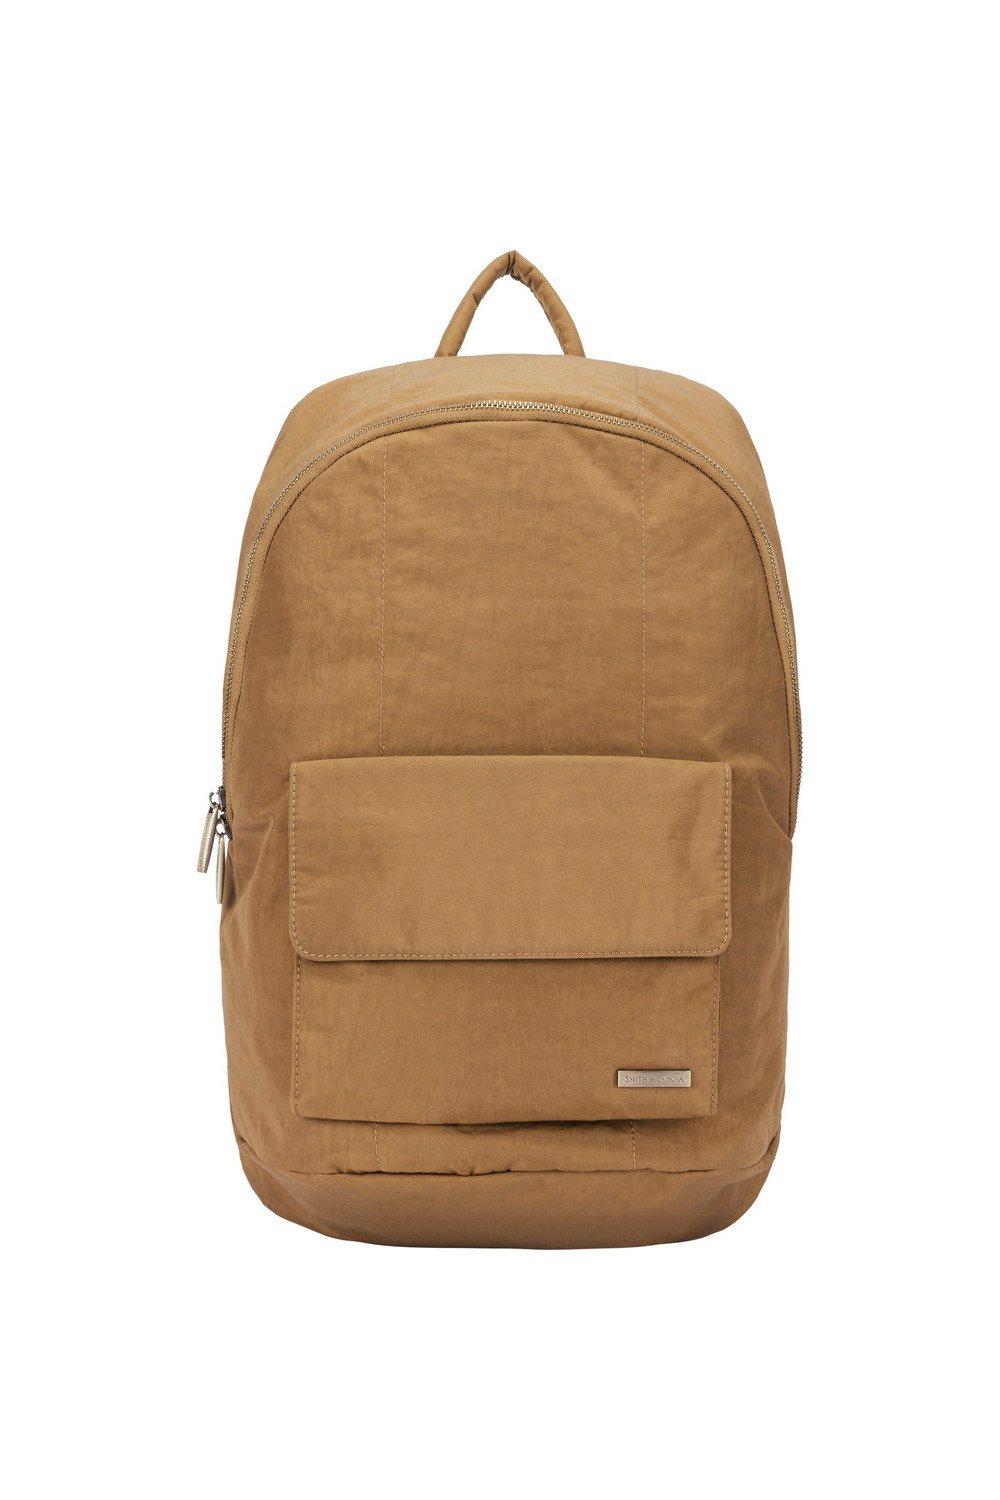 Нейлоновый рюкзак на молнии Smith and Canova, коричневый сумка для ноутбука 11 13 дюймов шерстяной фетровый чехол для ноутбука чехол для macbook портфель чехол для ноутбука чехол для huawei matebook сумка д